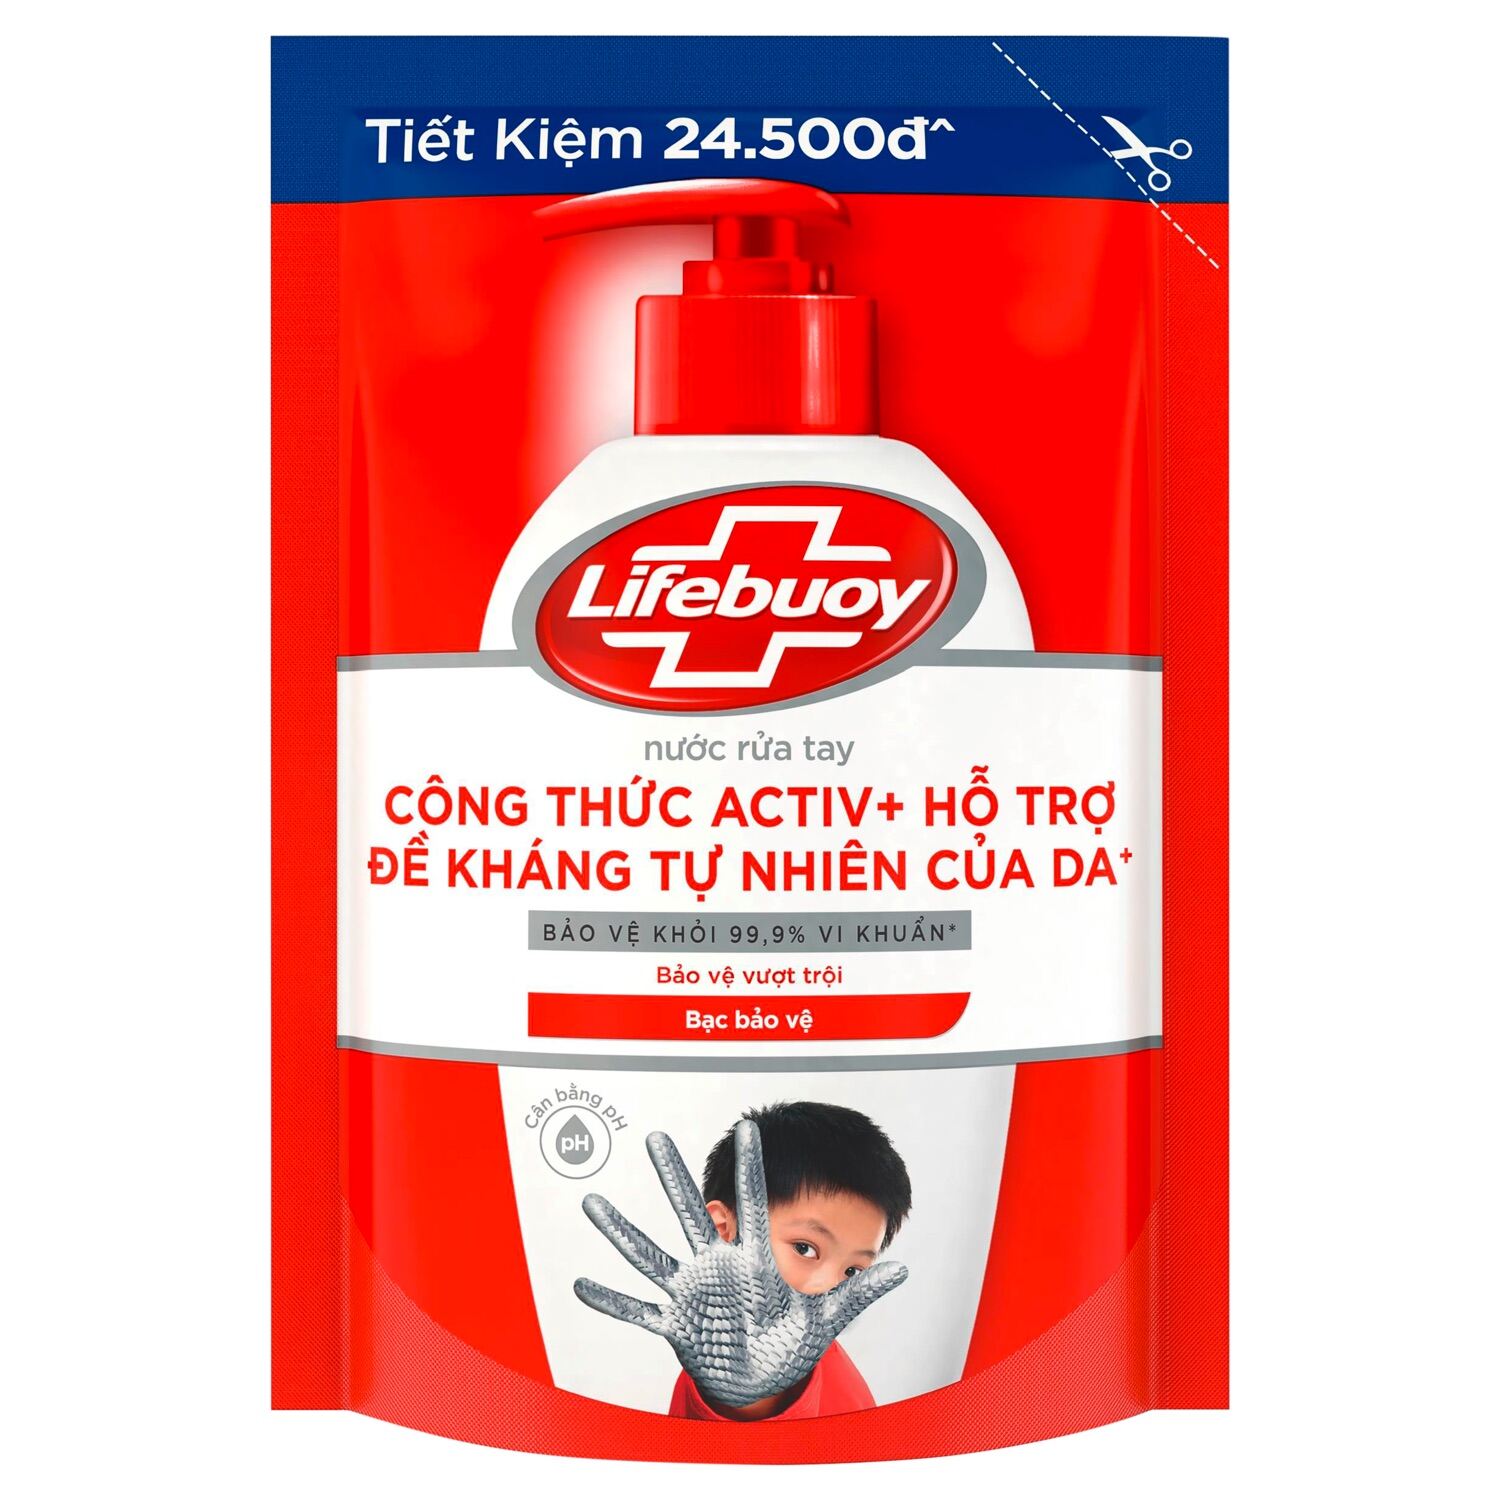 [Date mới] Nước rửa tay Lifebuoy dạng túi 450g